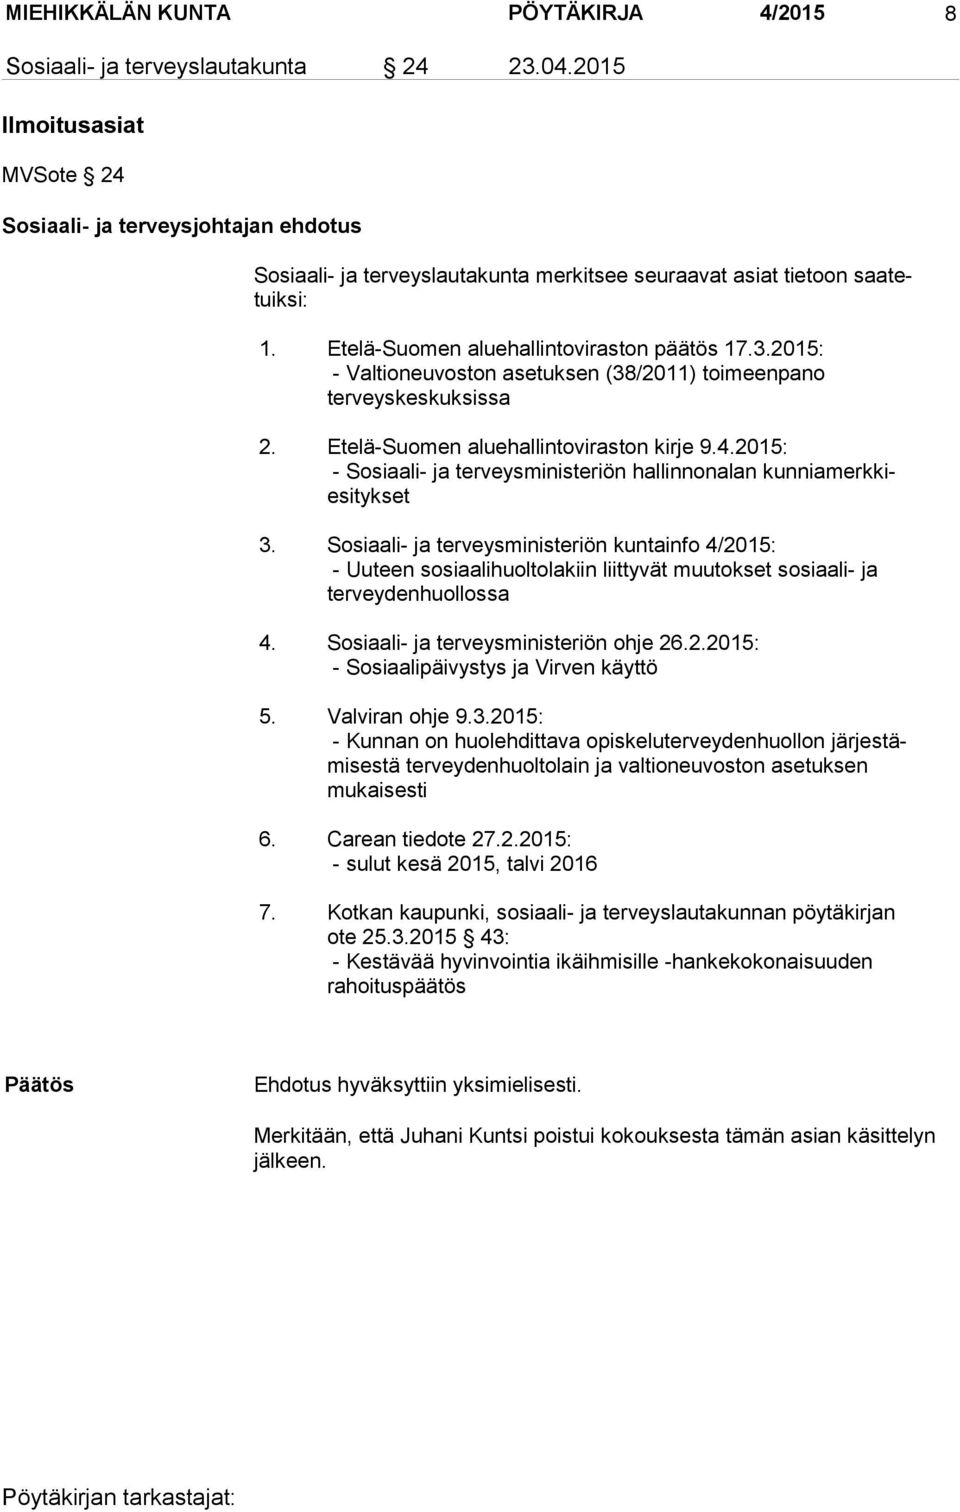 2015: - Valtioneuvoston asetuksen (38/2011) toimeenpano terveyskeskuksissa 2. Etelä-Suomen aluehallintoviraston kirje 9.4.2015: - Sosiaali- ja terveysministeriön hallinnonalan kunniamerkkiesitykset 3.